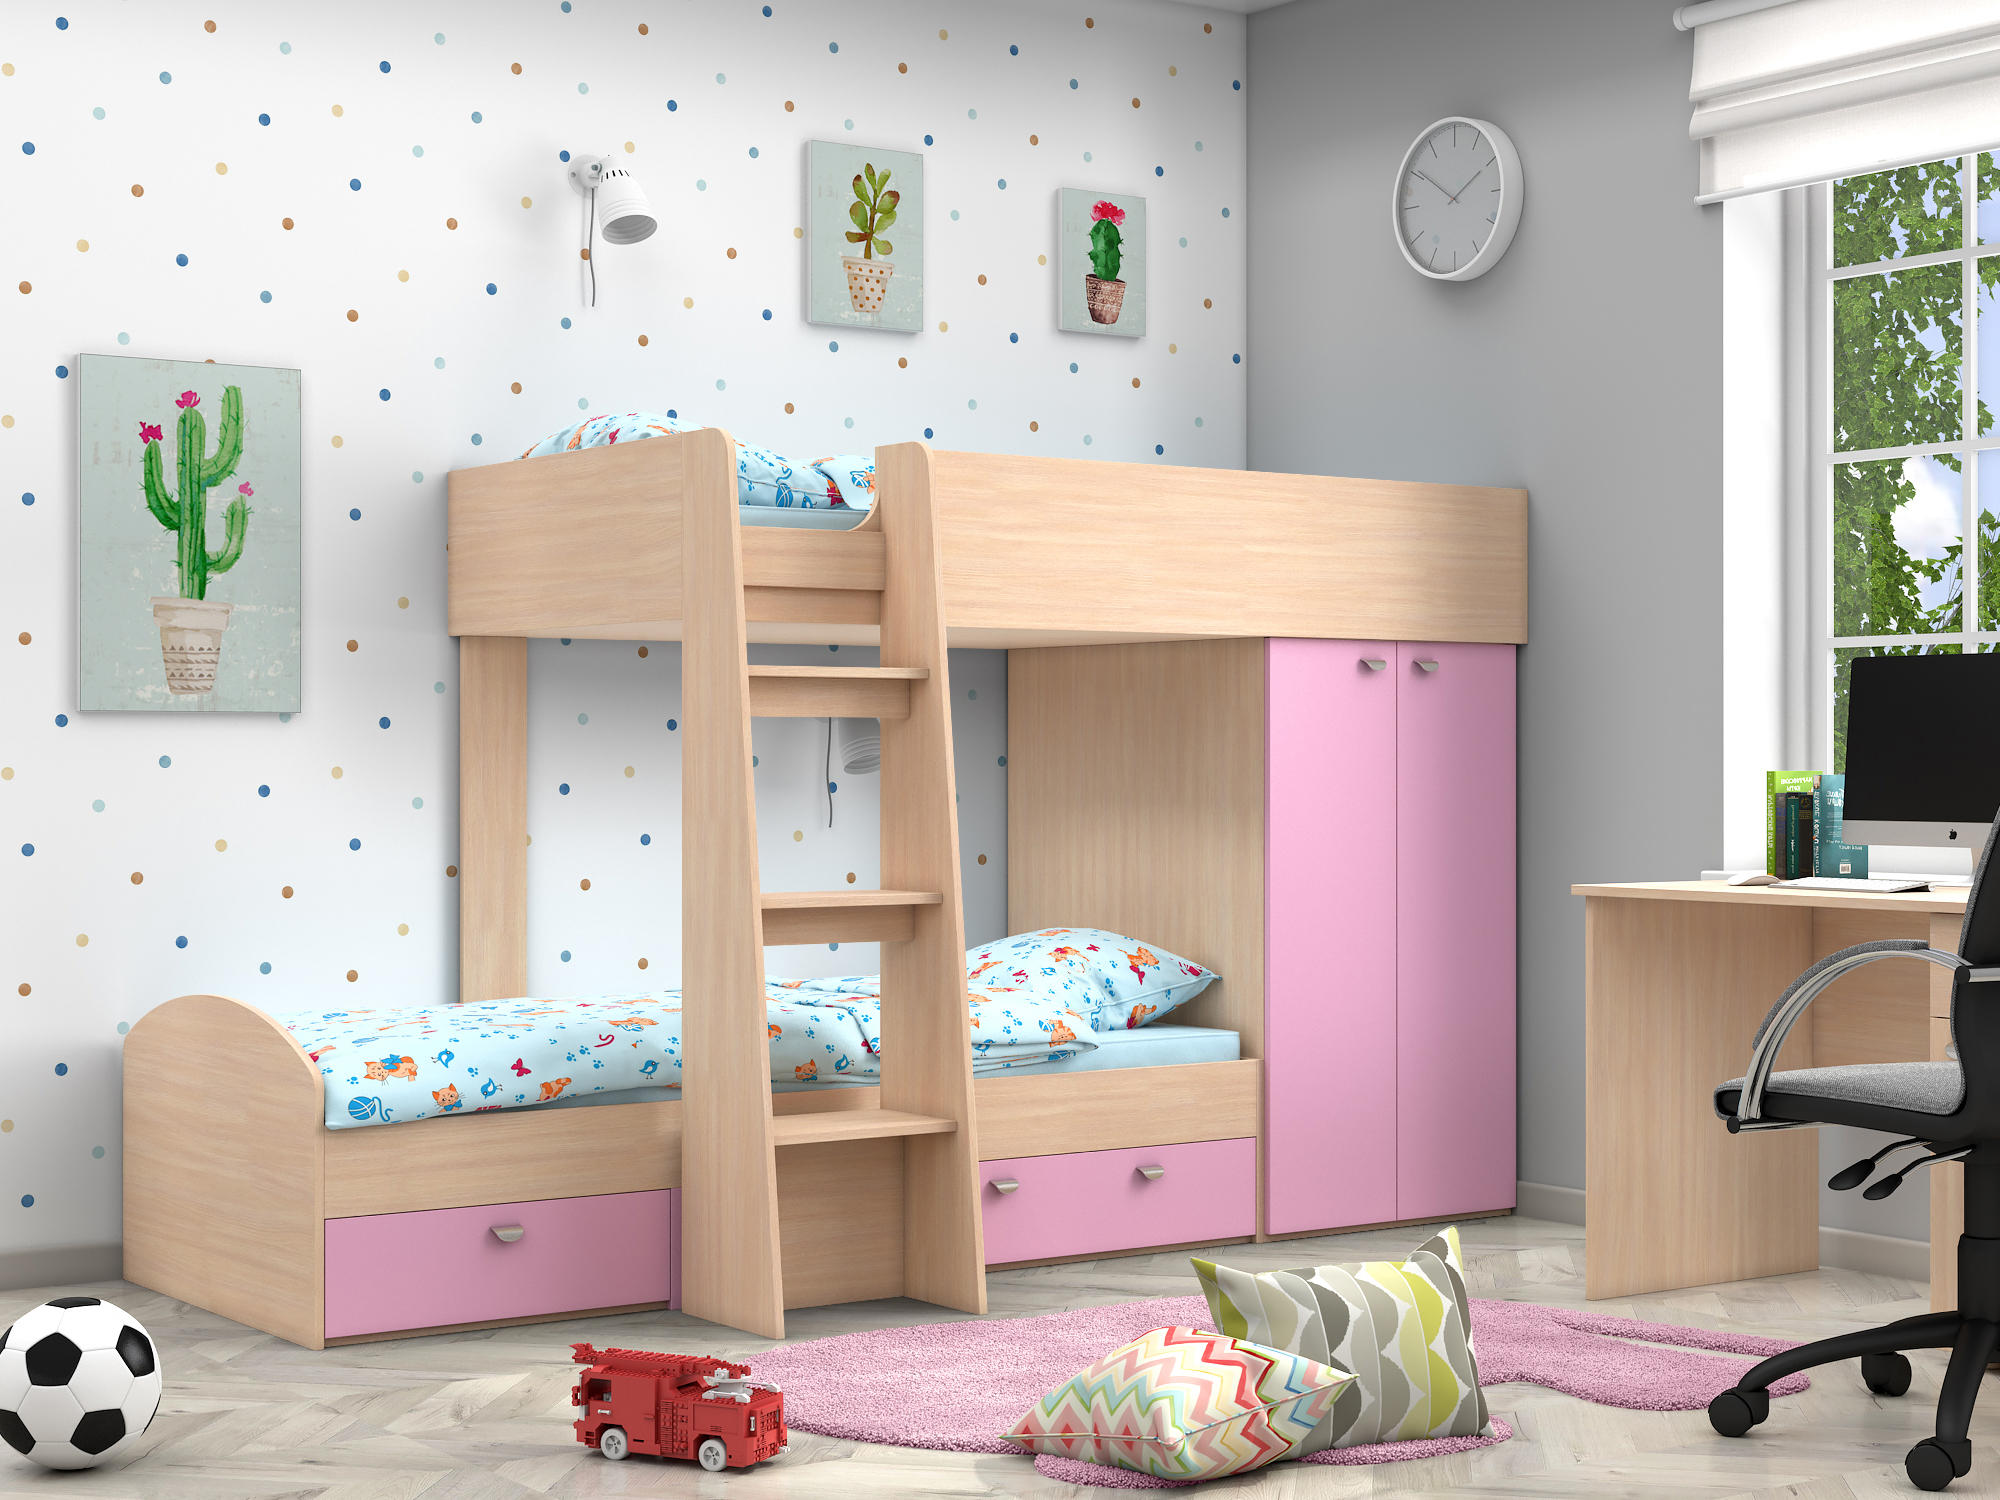 Двухъярусная кровать Golden Kids-2 (90х200) Розовый, Белый, Бежевый, ЛДСП двухъярусная кровать golden kids 2 90х200 дуб вотан бежевый белый лдсп